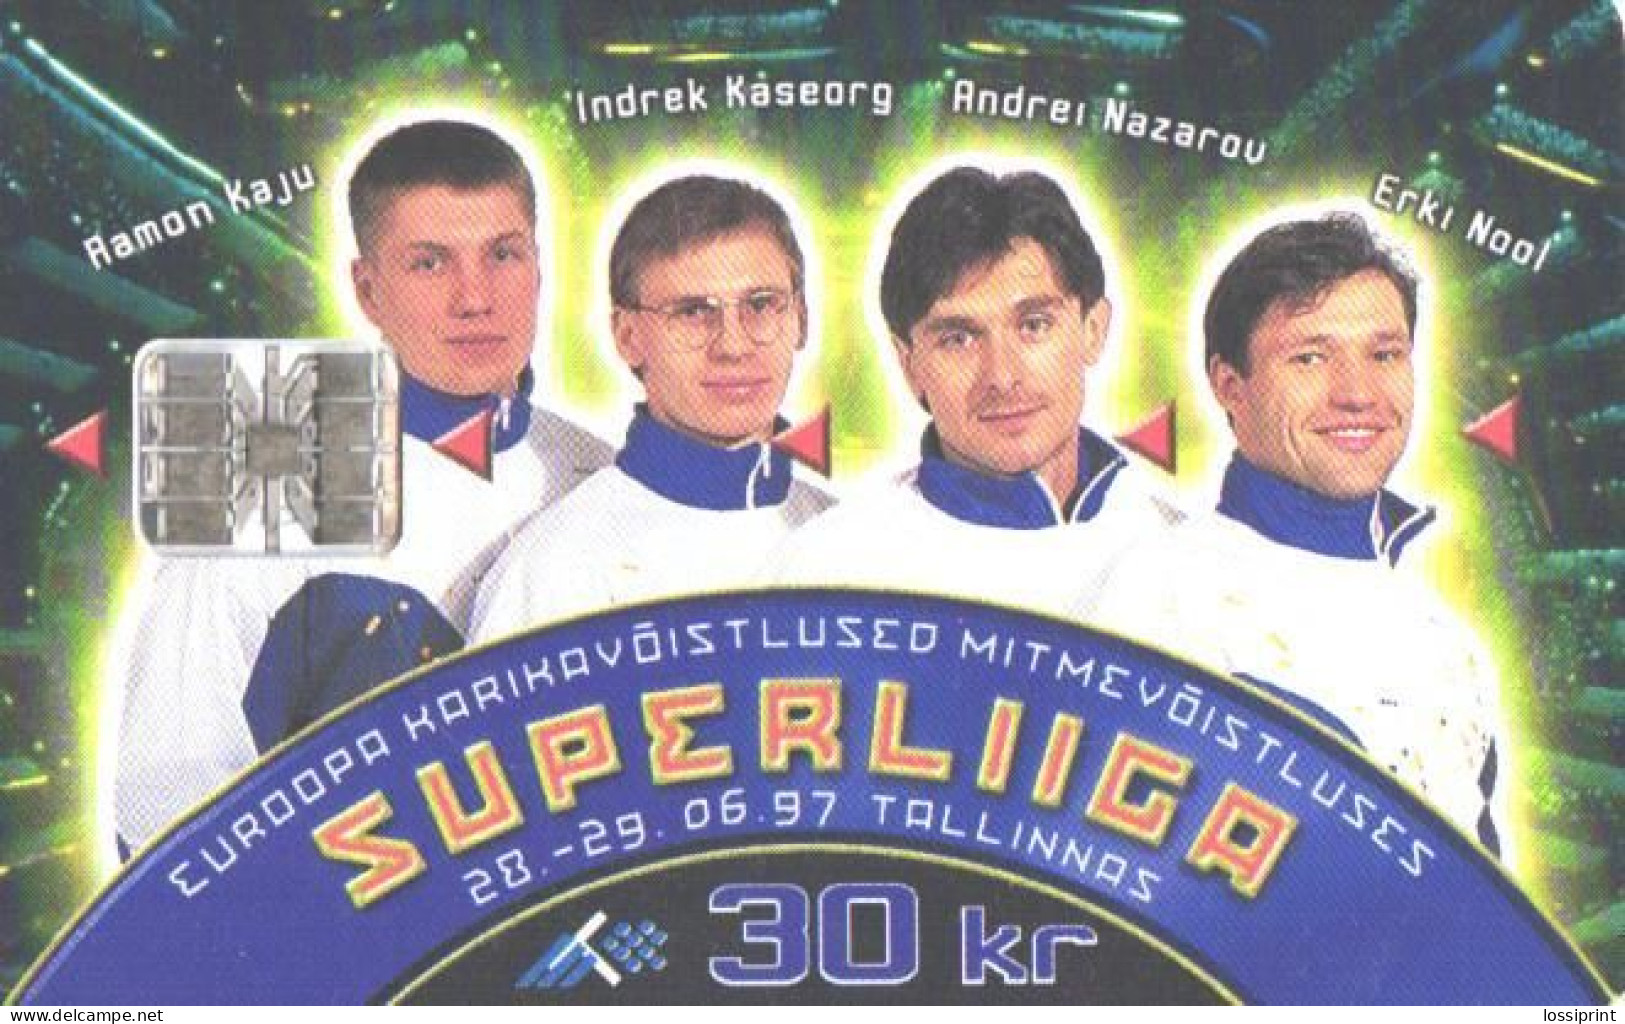 Estonia:Used Phonecard, Eesti Telefon, 30 EEK, Super League, Olympig Champion Erki Nool, Decathlon, 1997 - Sport